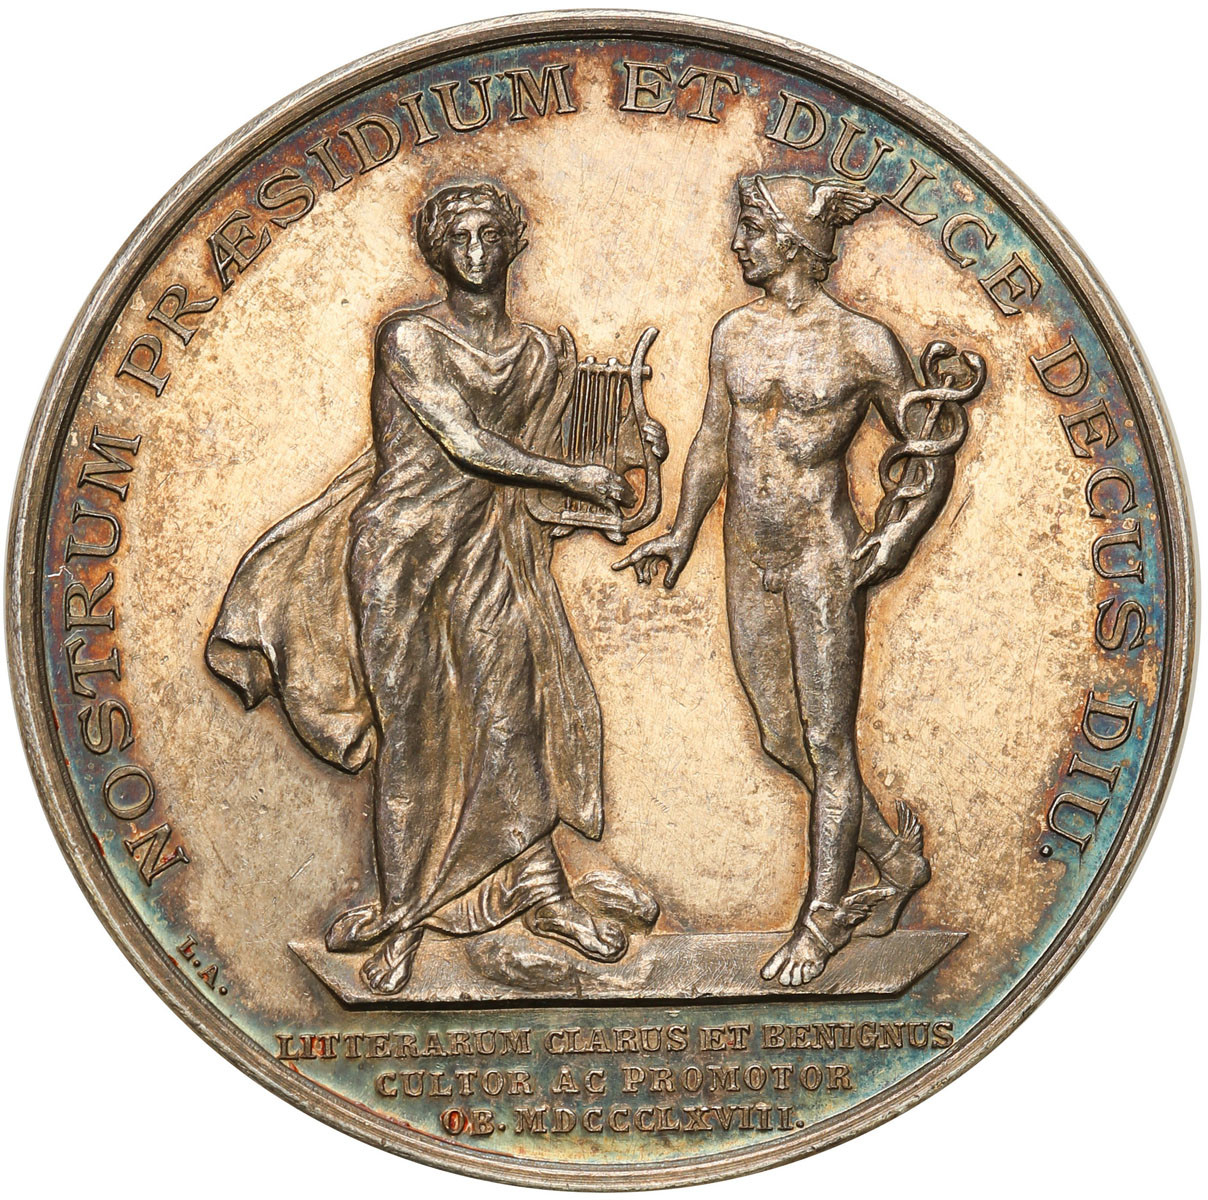 Szwecja, Karol XV (1859-1872). Medal 1868 - szwedzki poety Bernhard von Beskow, srebro